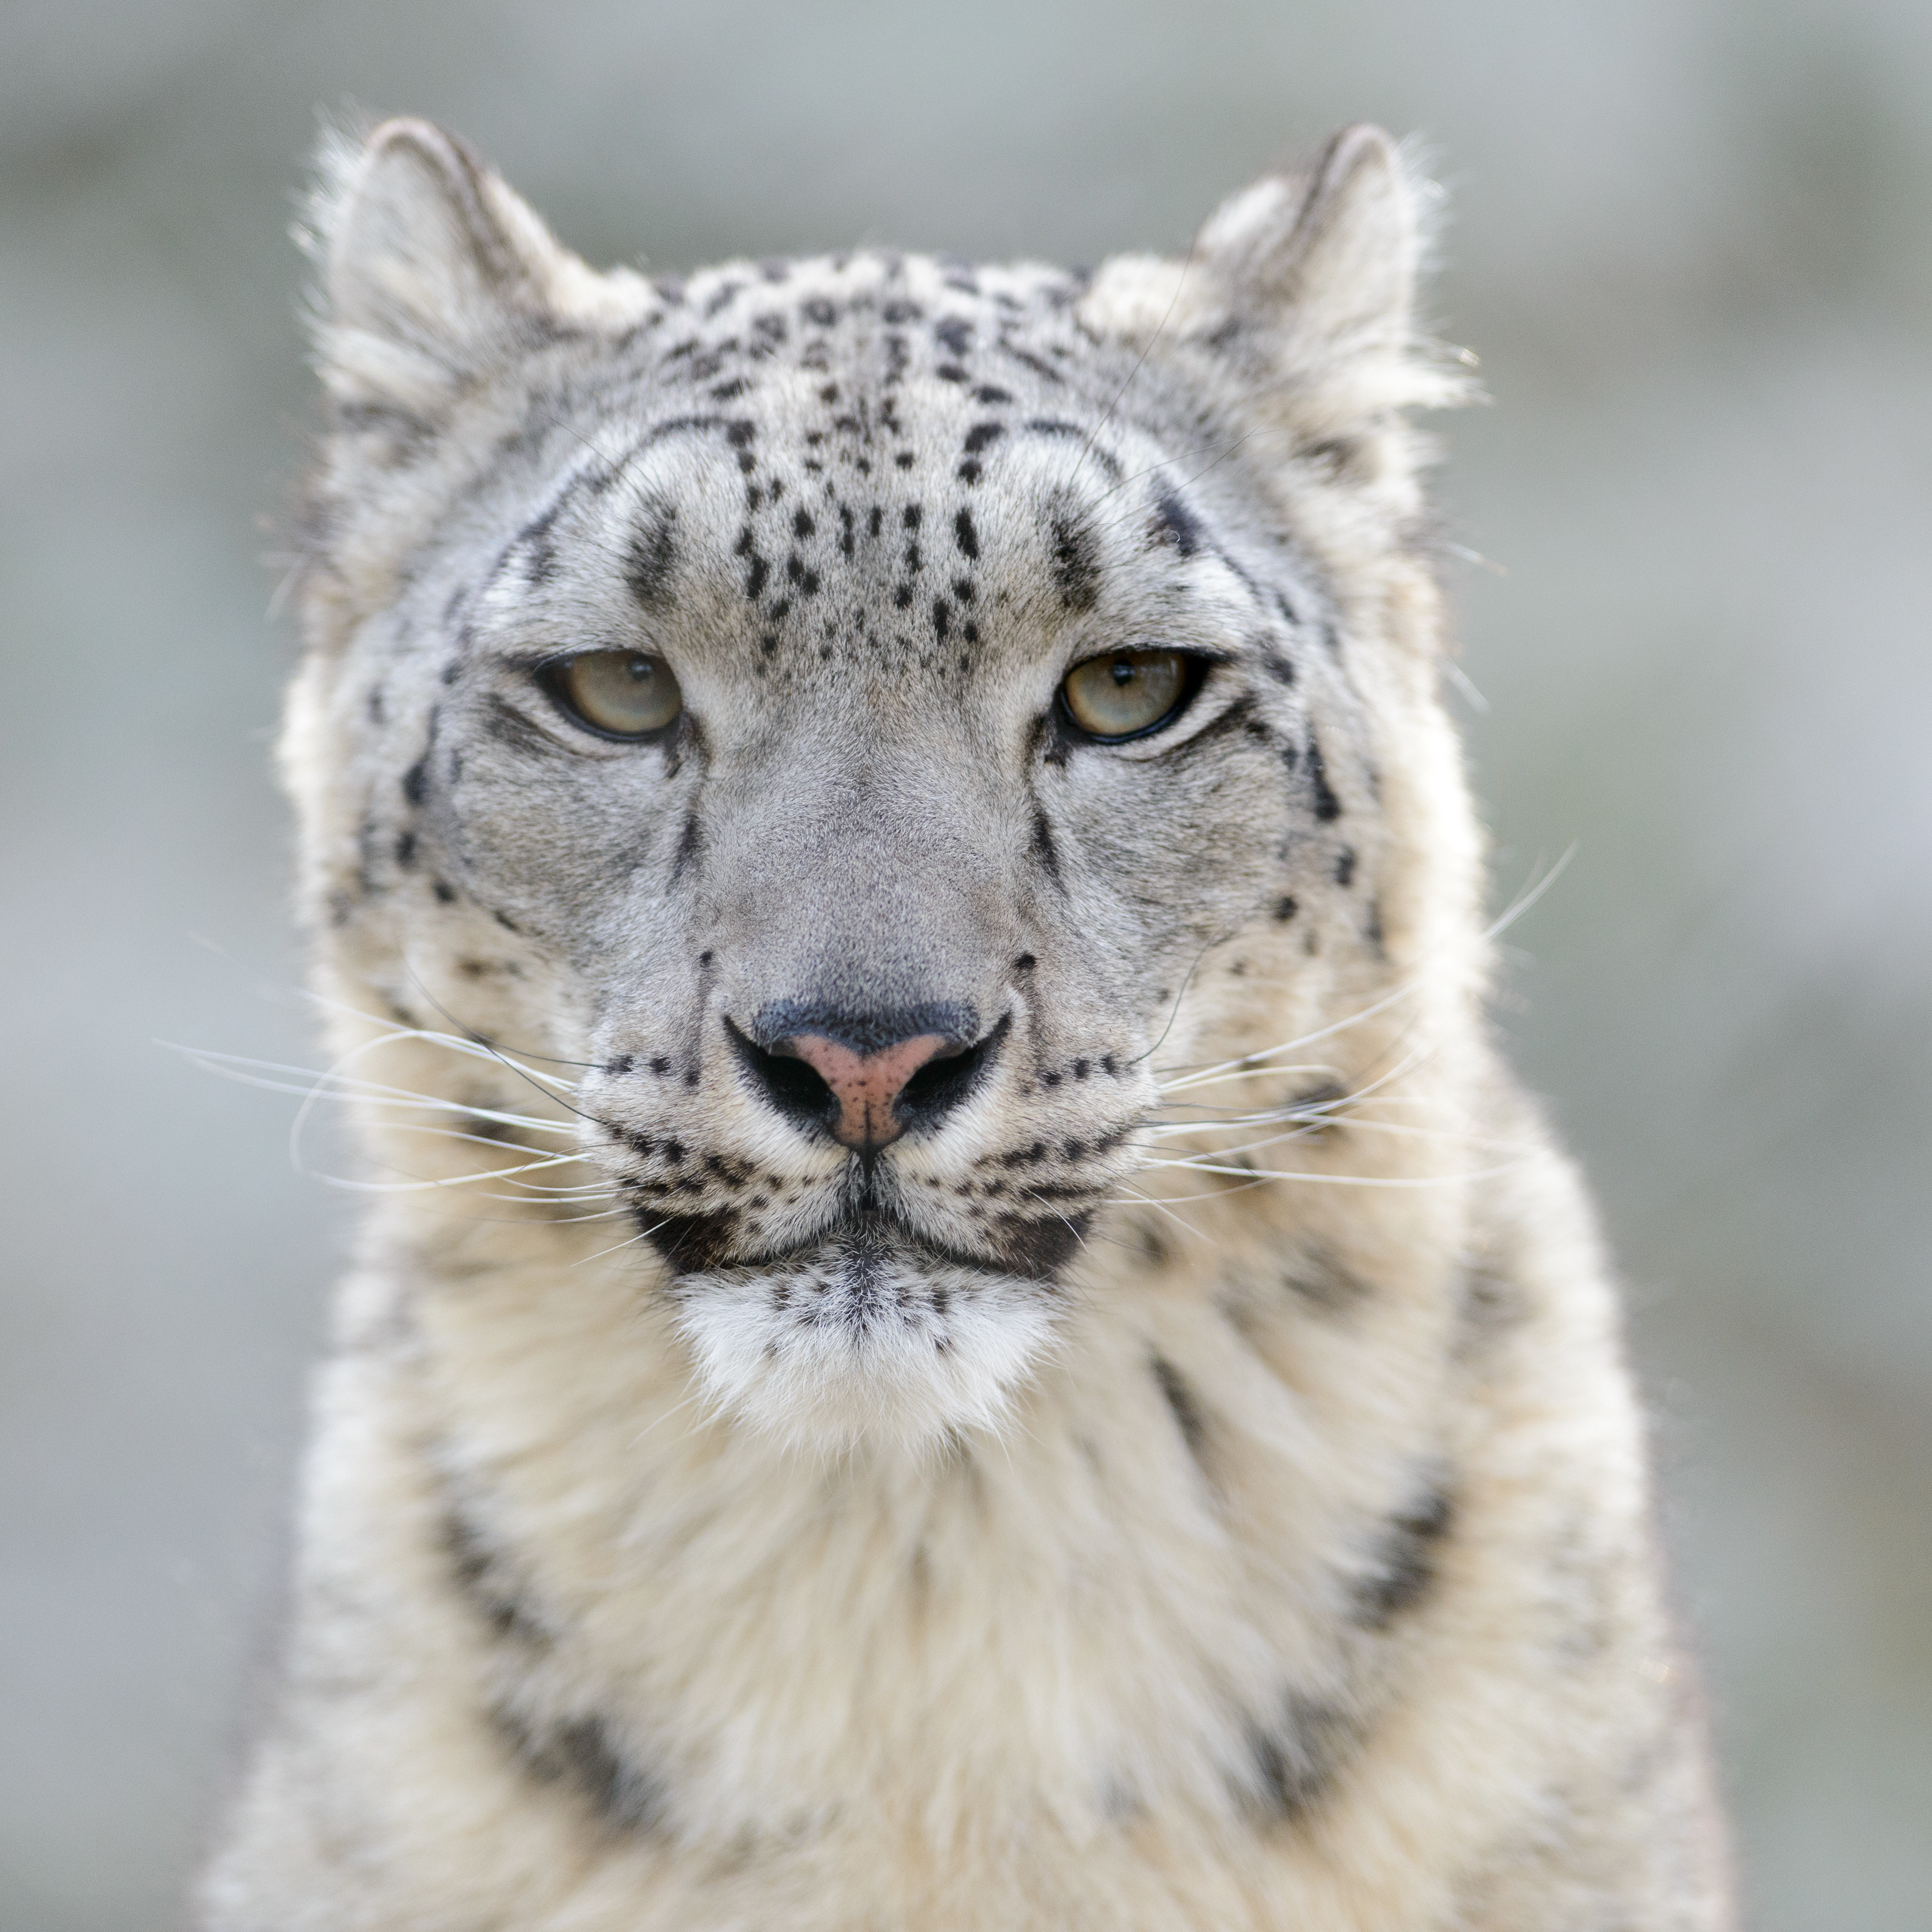 Snow_Leopard_EricKilby.jpg